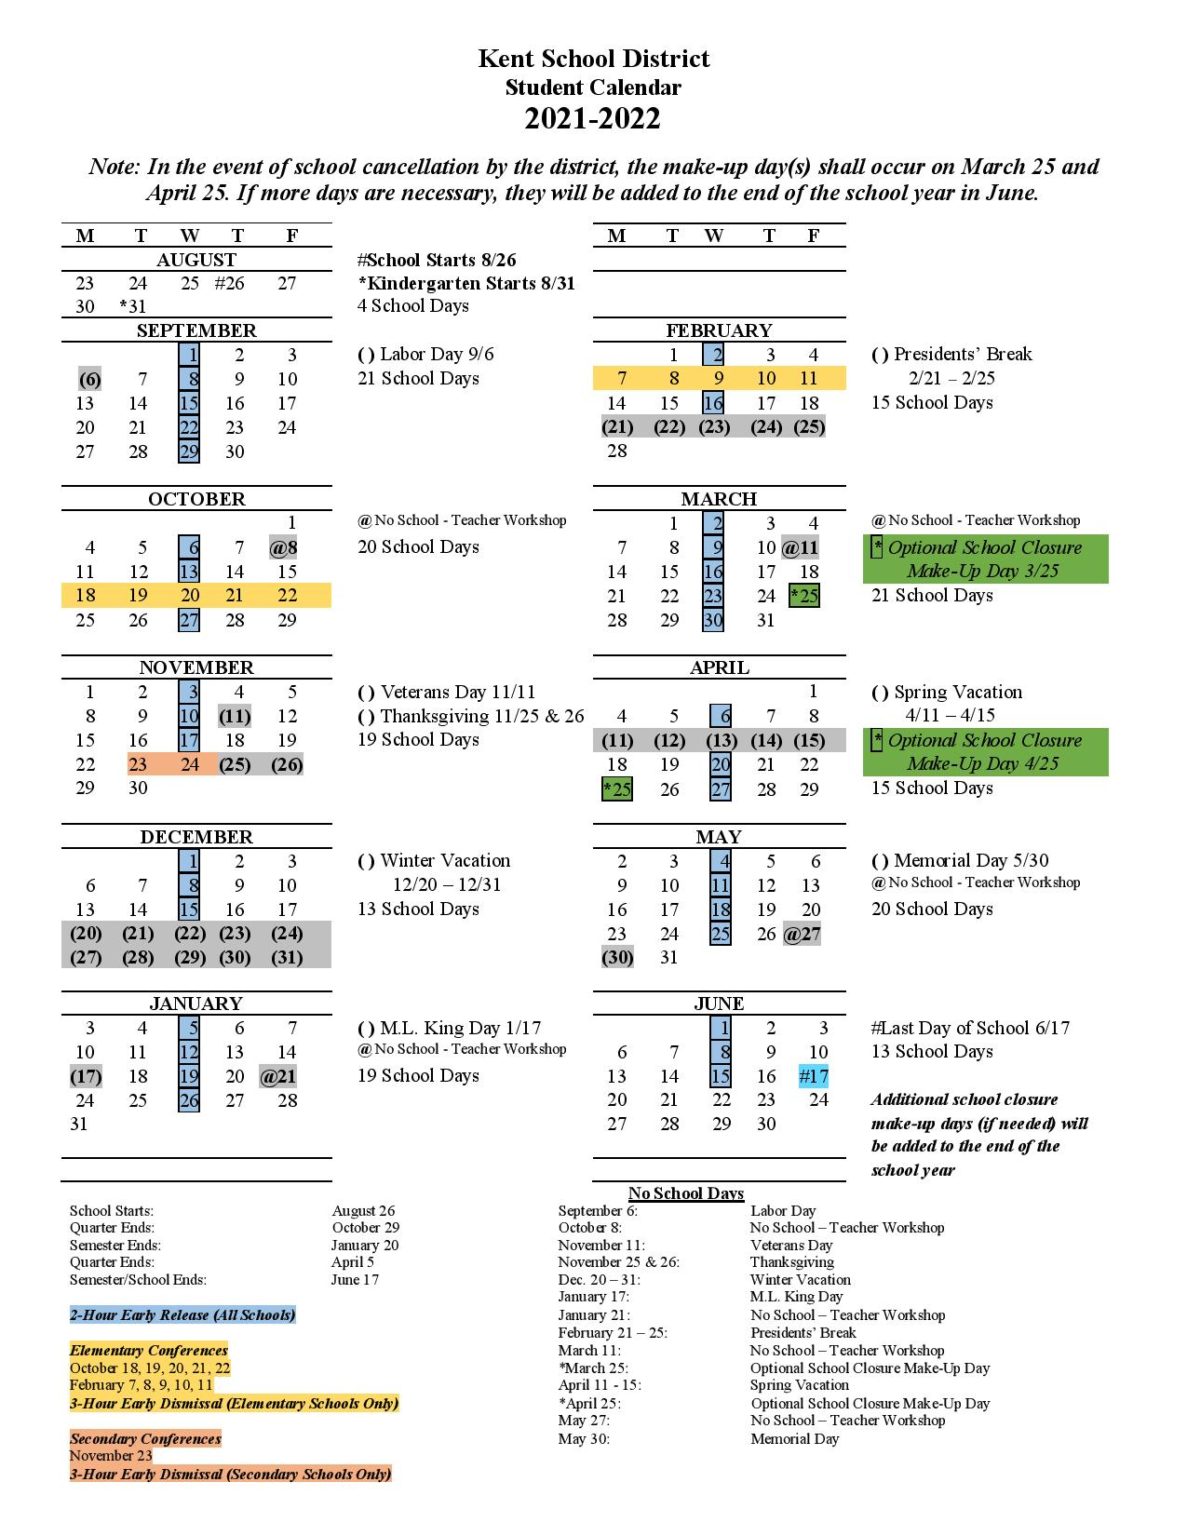 Kent School District Calendar 20212022 in PDF Download Here